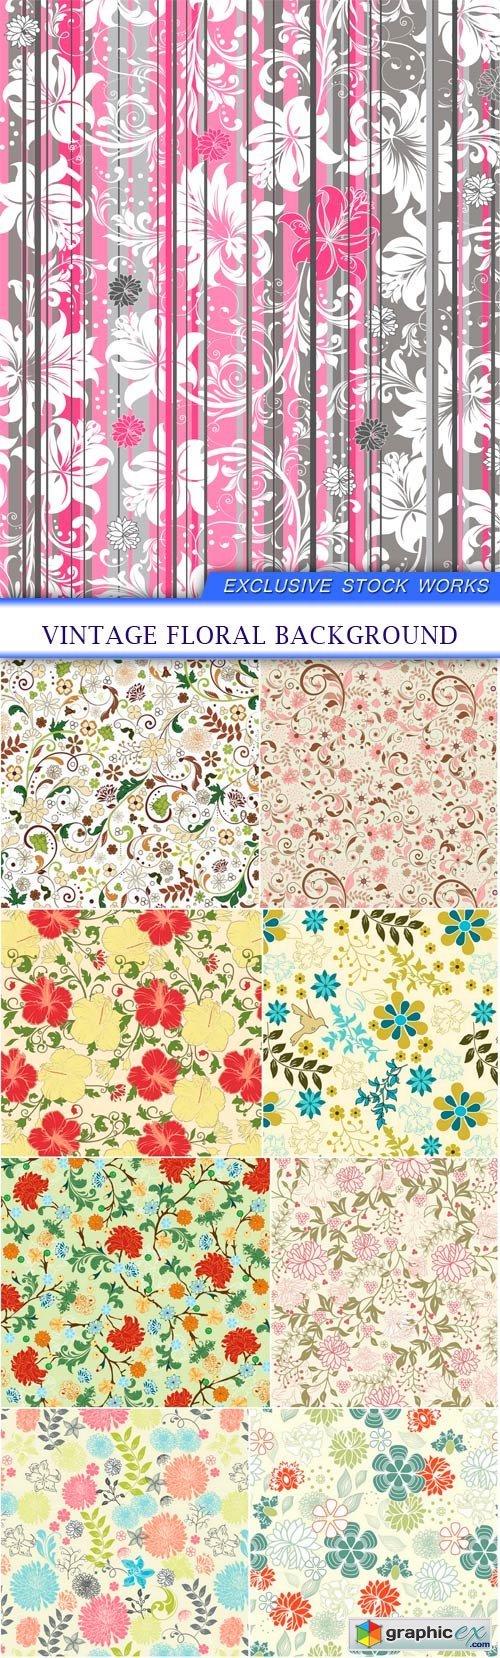 Vintage floral background 9X EPS